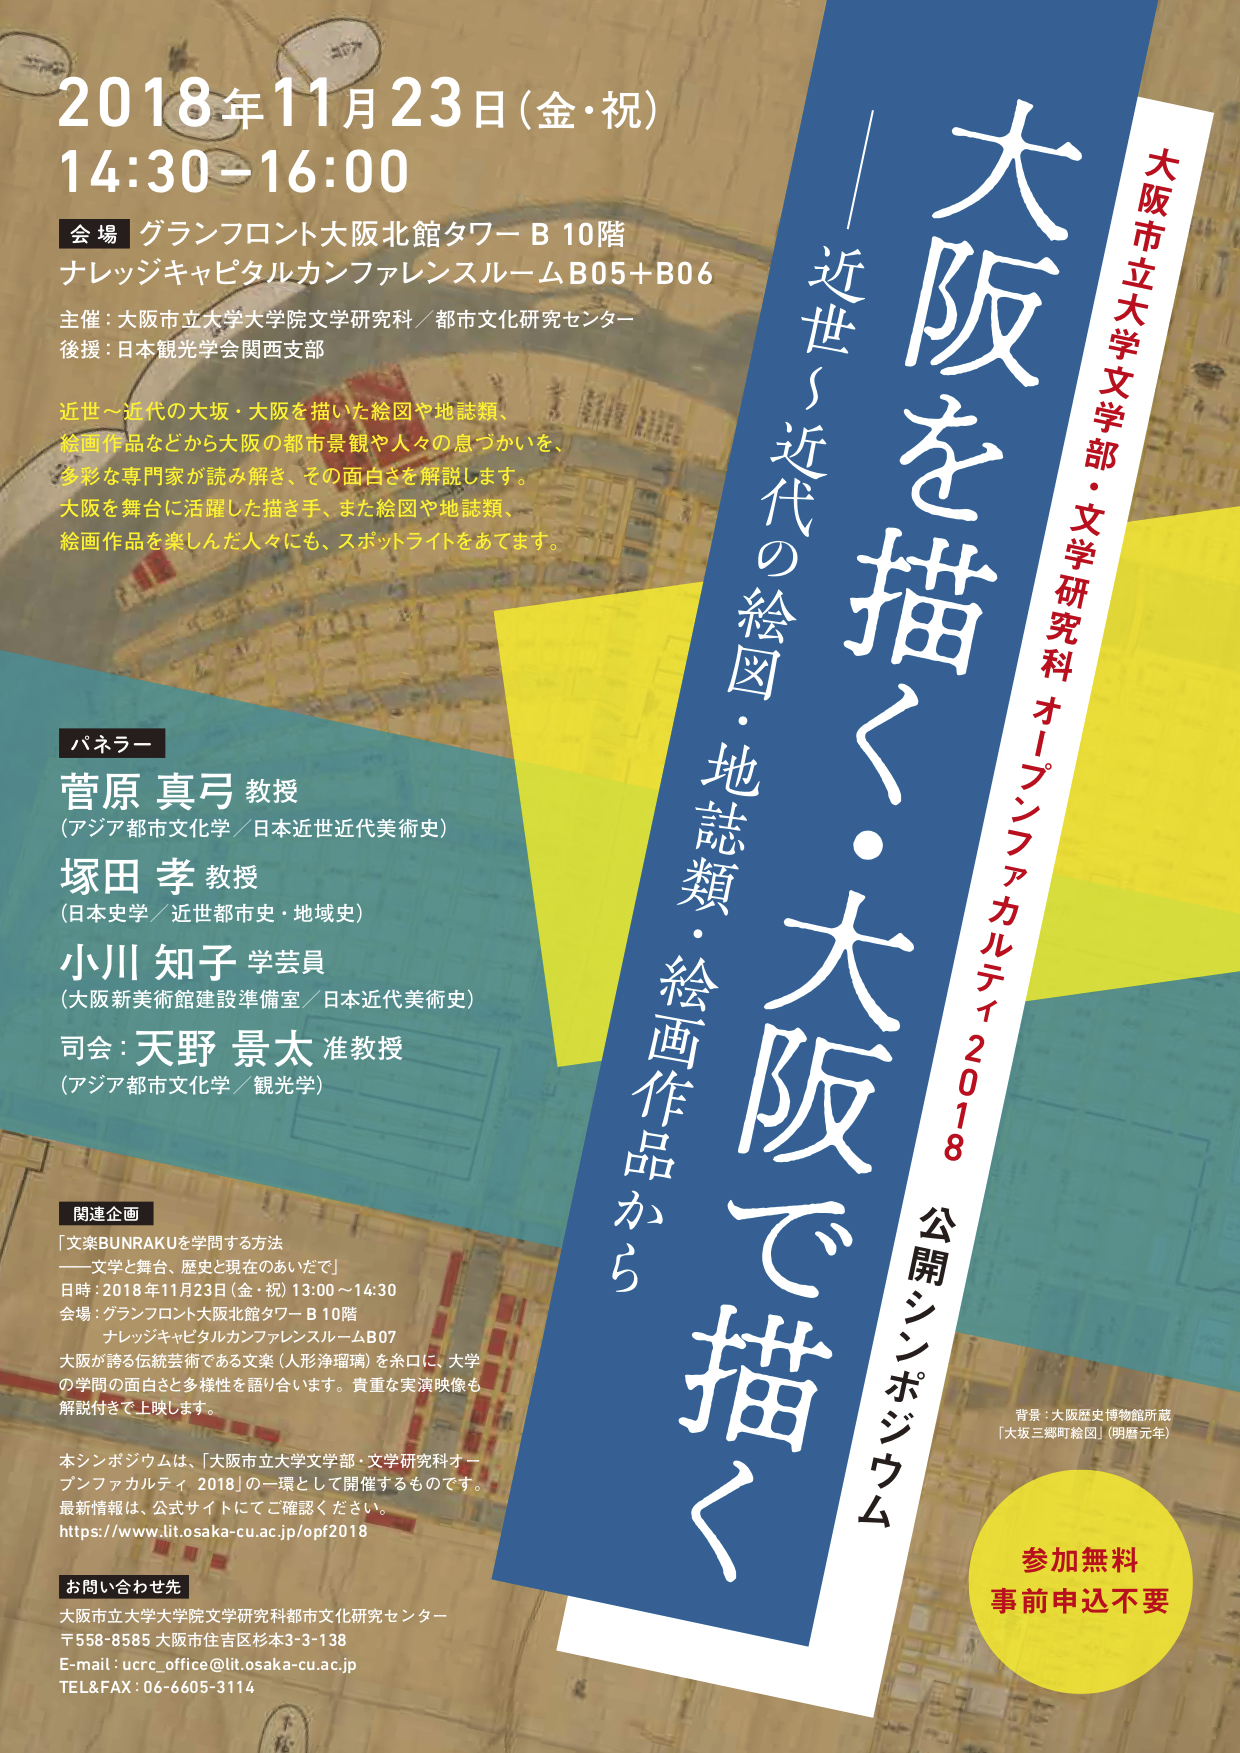 公開シンポジウム「大阪を描く・大阪で描く――近世～近代の絵図・地誌類